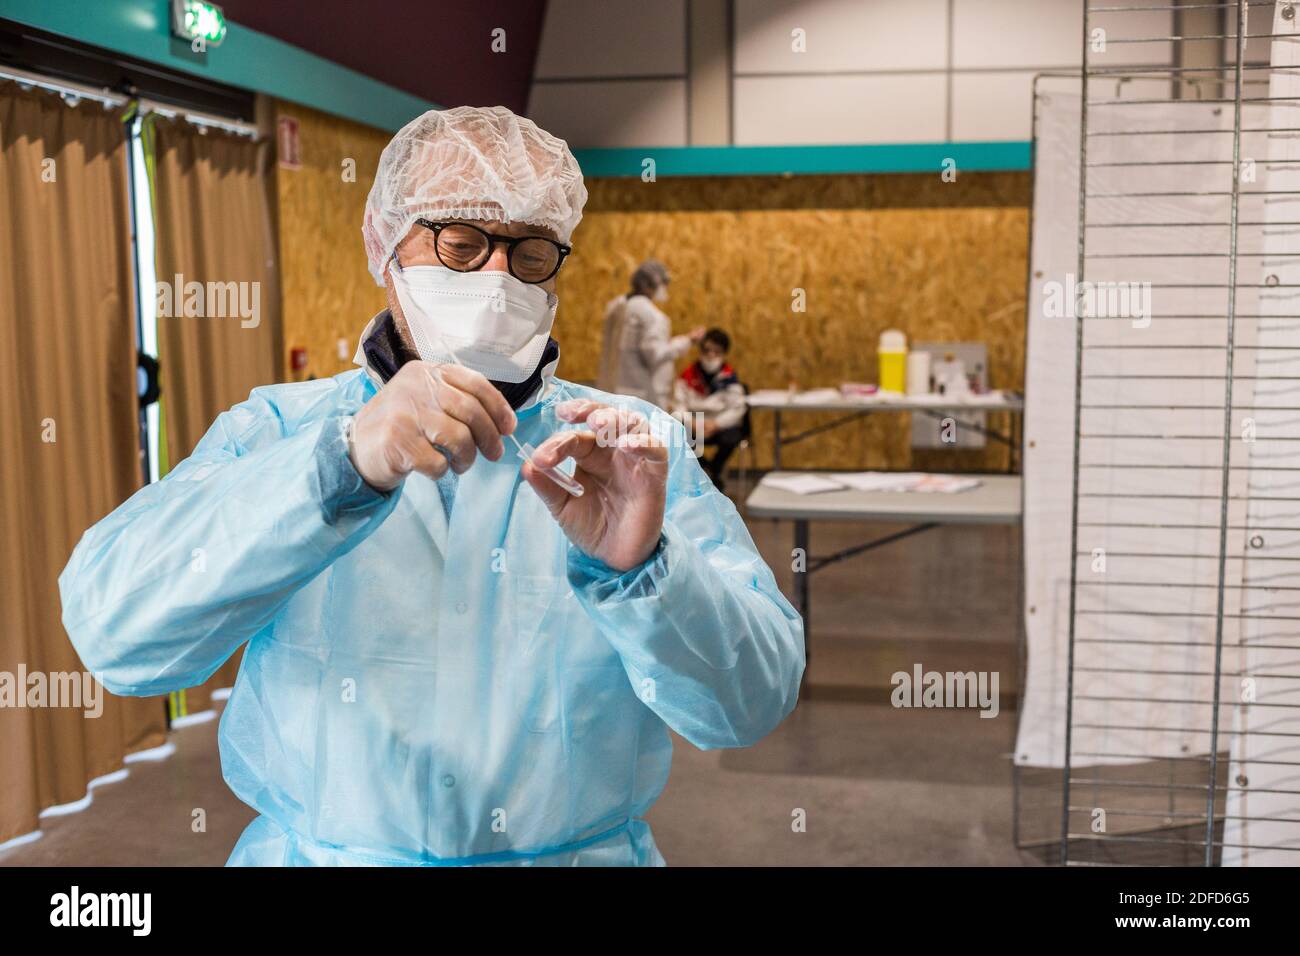 Il farmacista effettua un test antigenico per la ricerca di antigeni di SARS-COV-2, responsabile del COVID-19, Angoulême, Francia, novembre 2020. Foto Stock